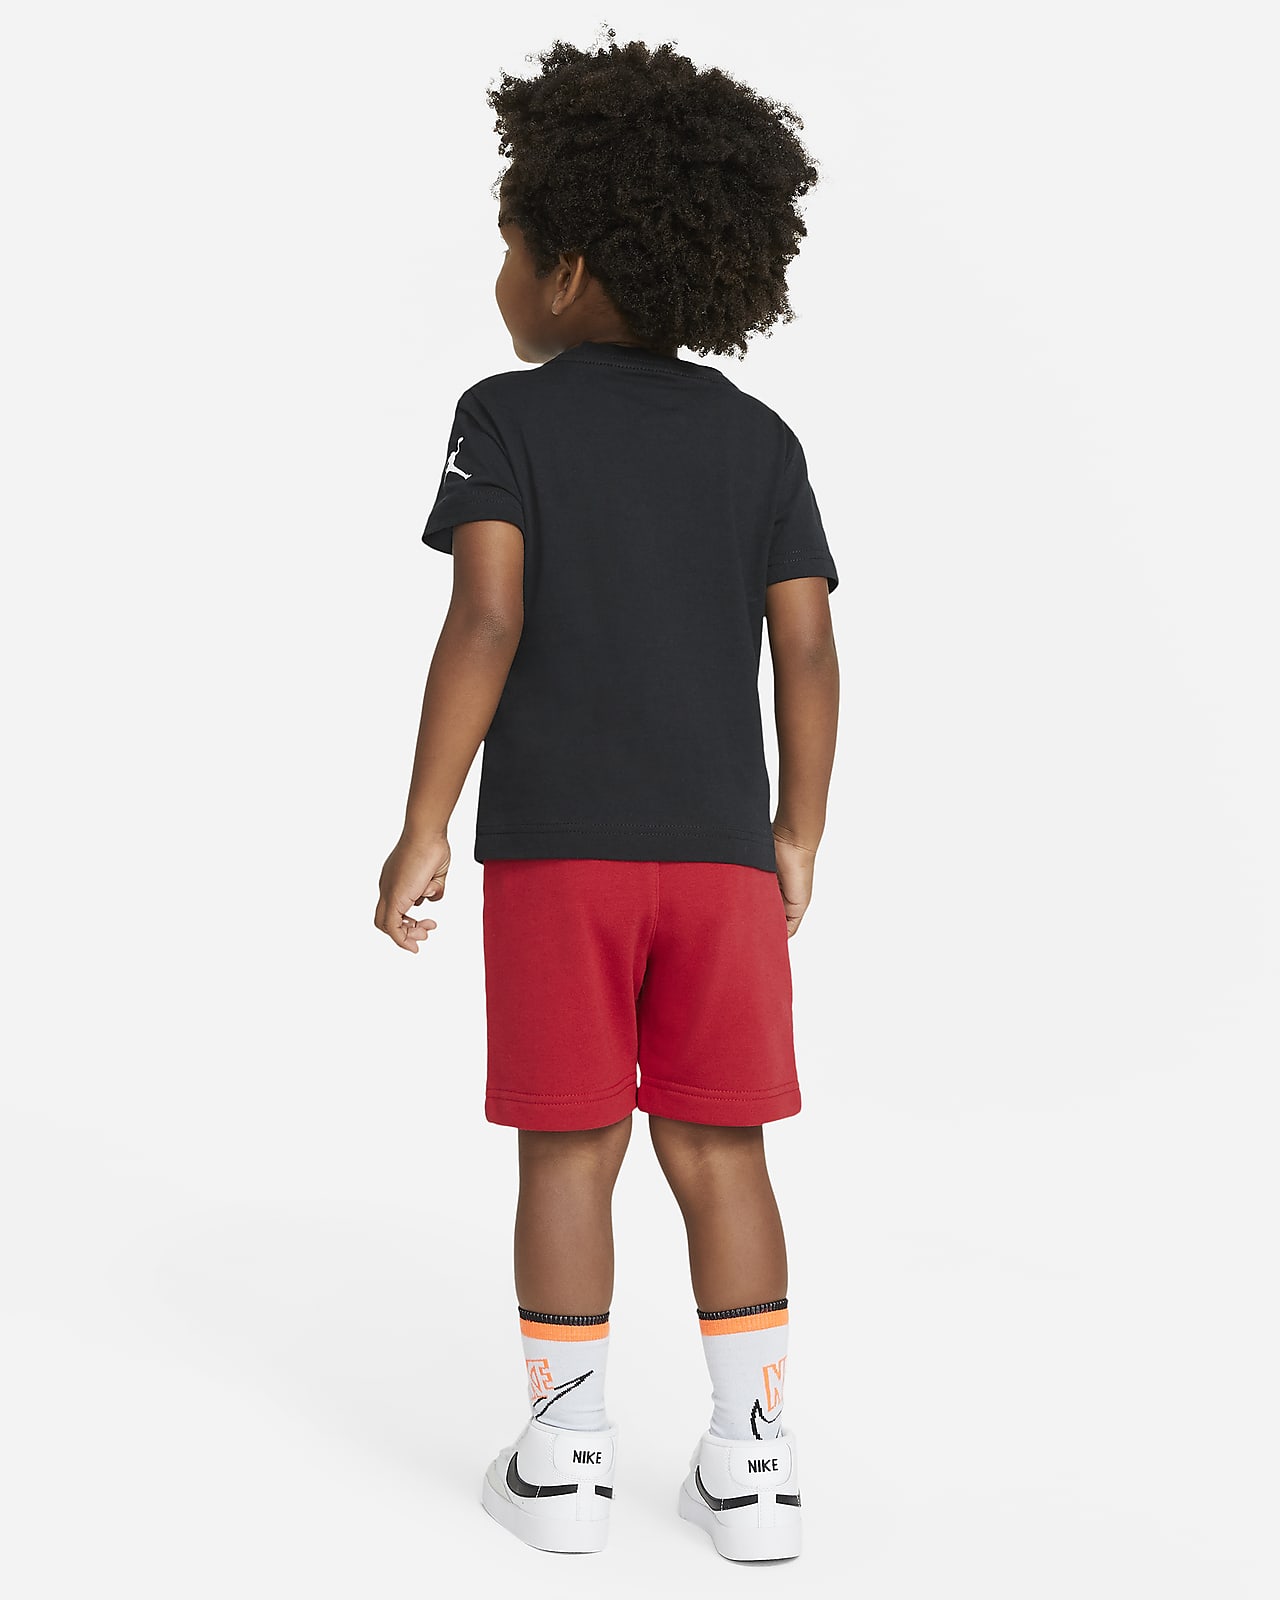 Jordan Jumpman Toddler T-Shirt and 